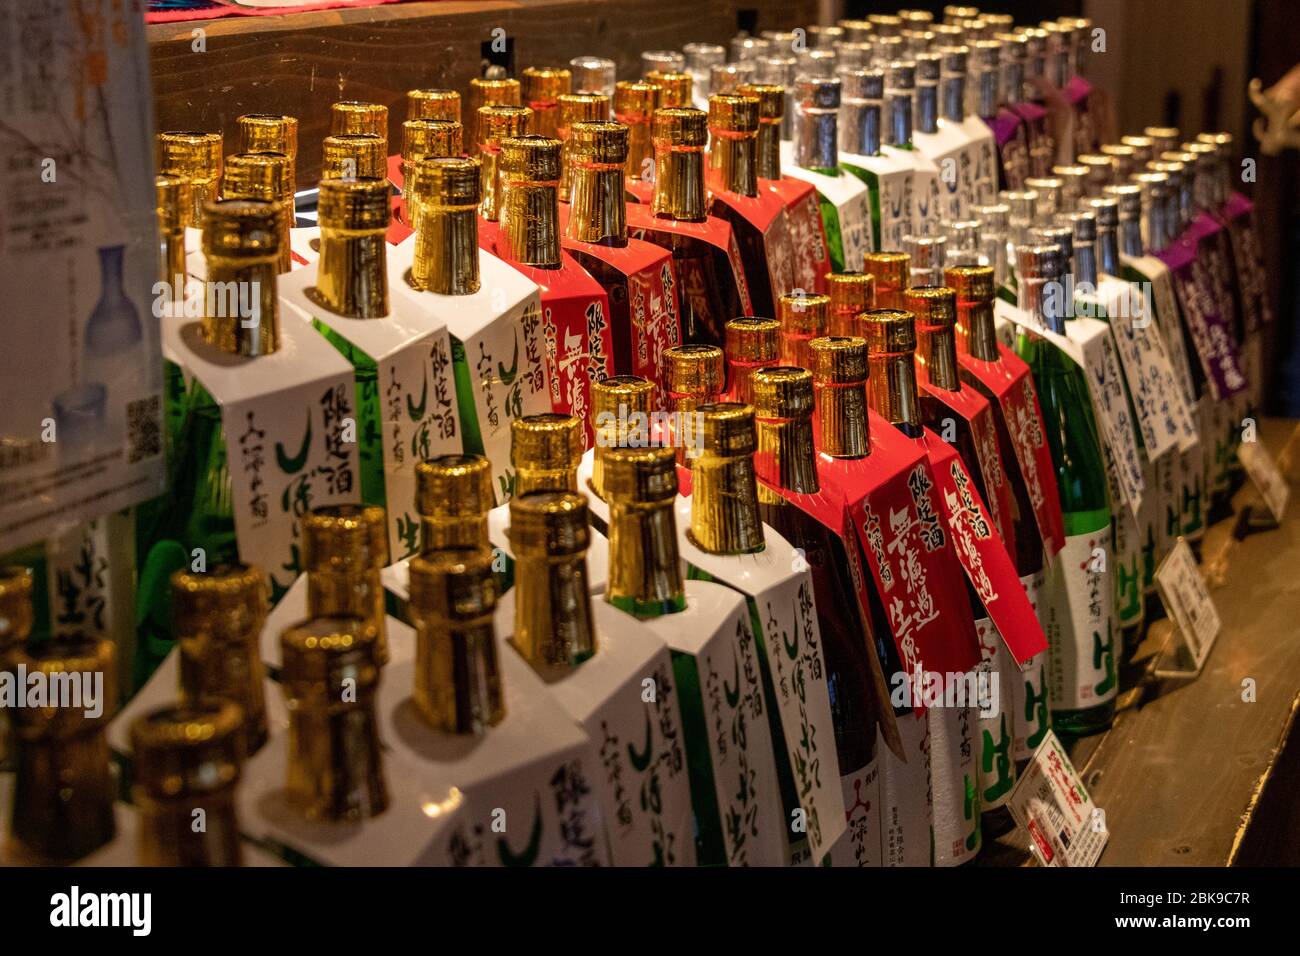 Bottiglie di sake in Shops, Takayama, Giappone Foto Stock